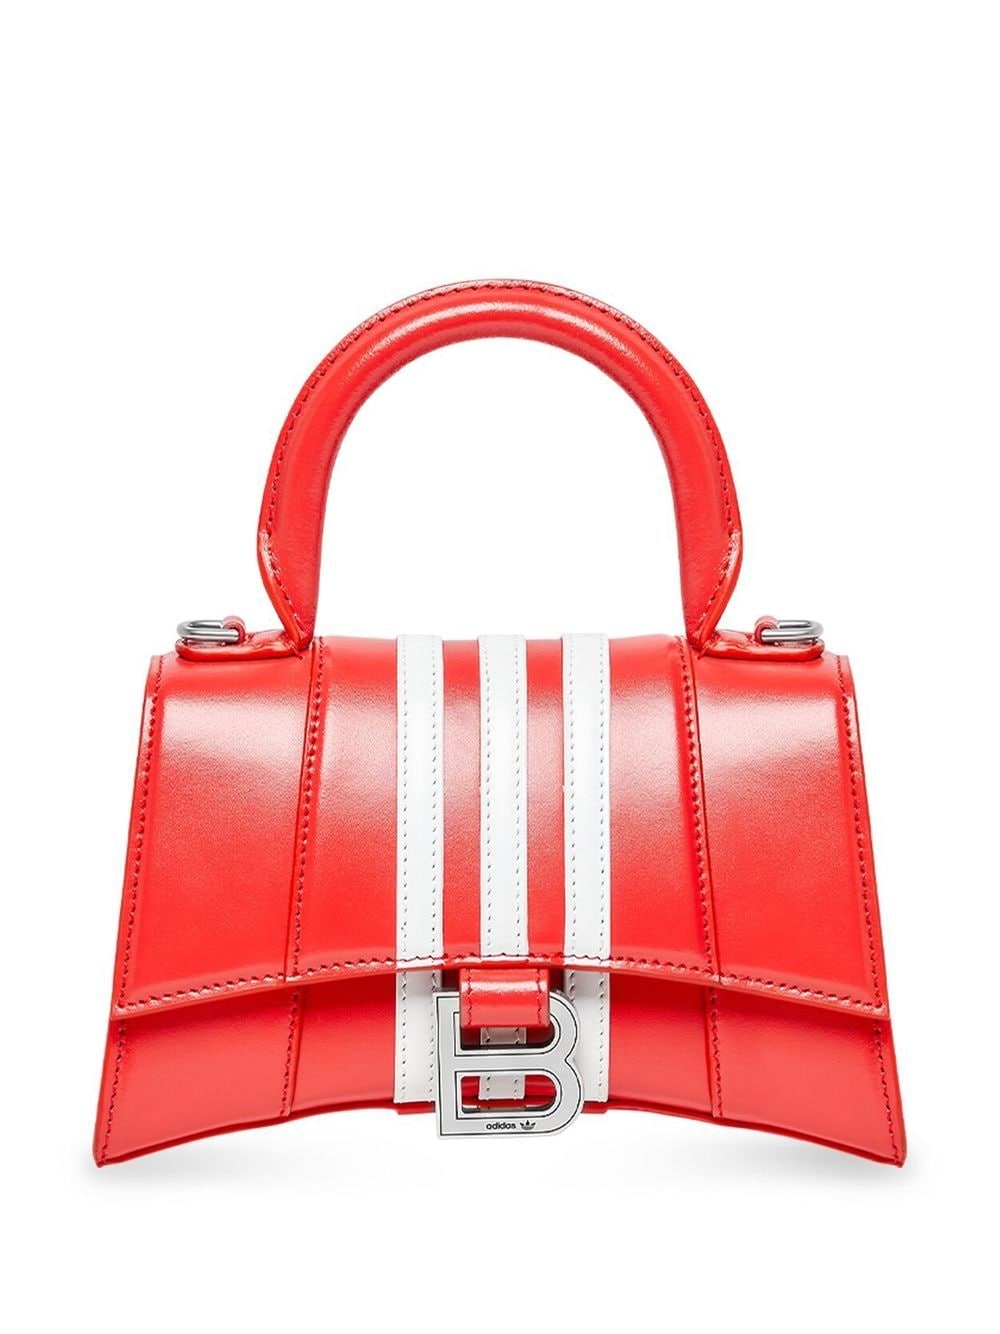 Balenciaga Hourglass XS Top Handle Bag - Farfetch